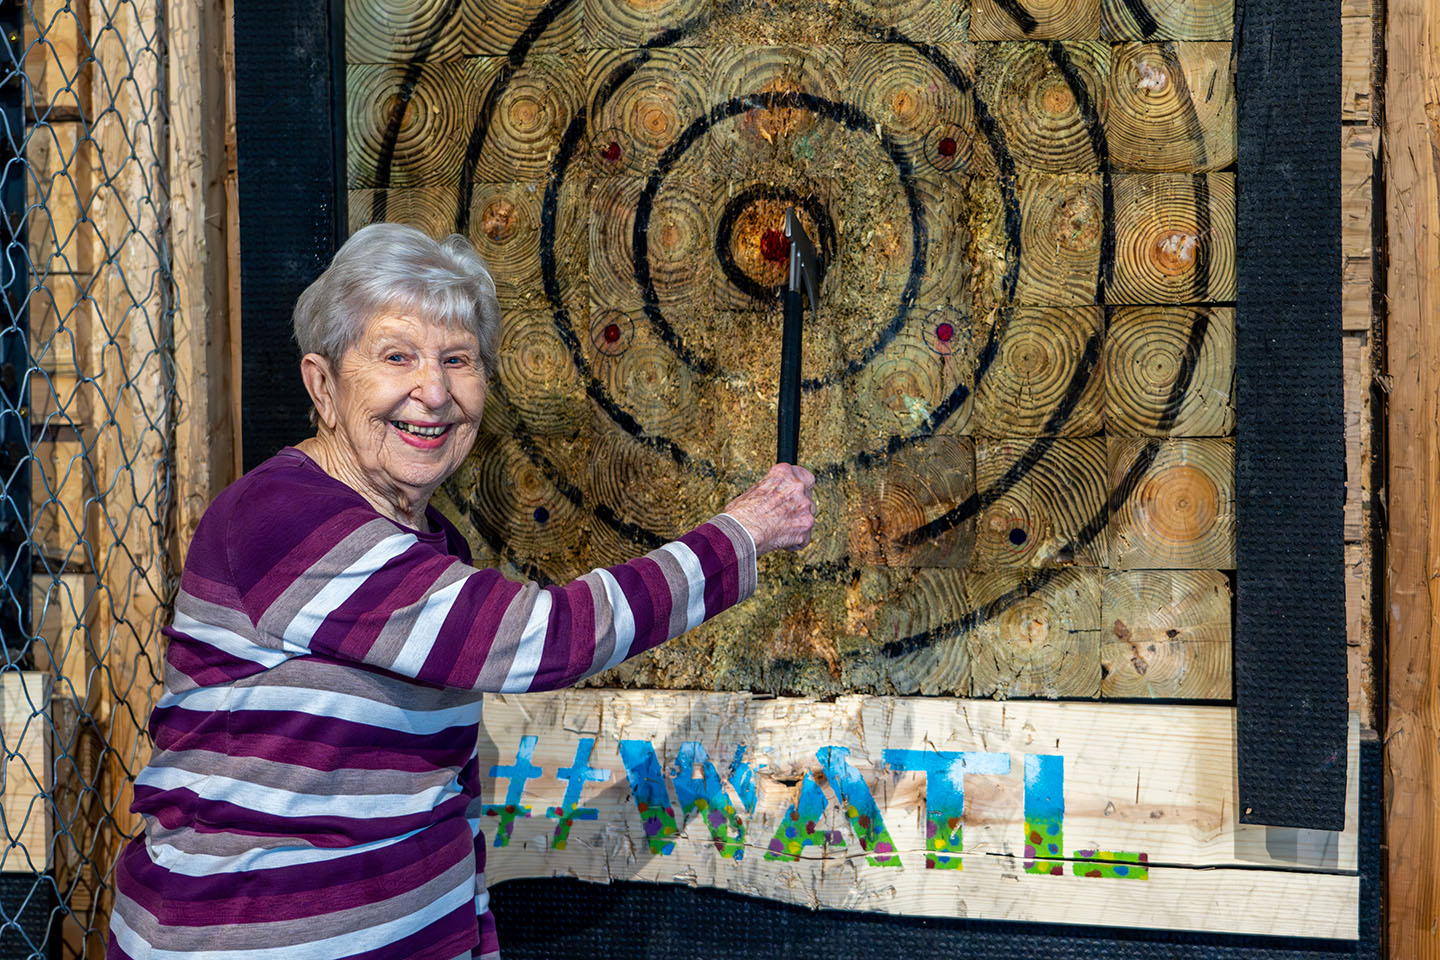 A senior woman smiles with an Axe Throwing bullseye